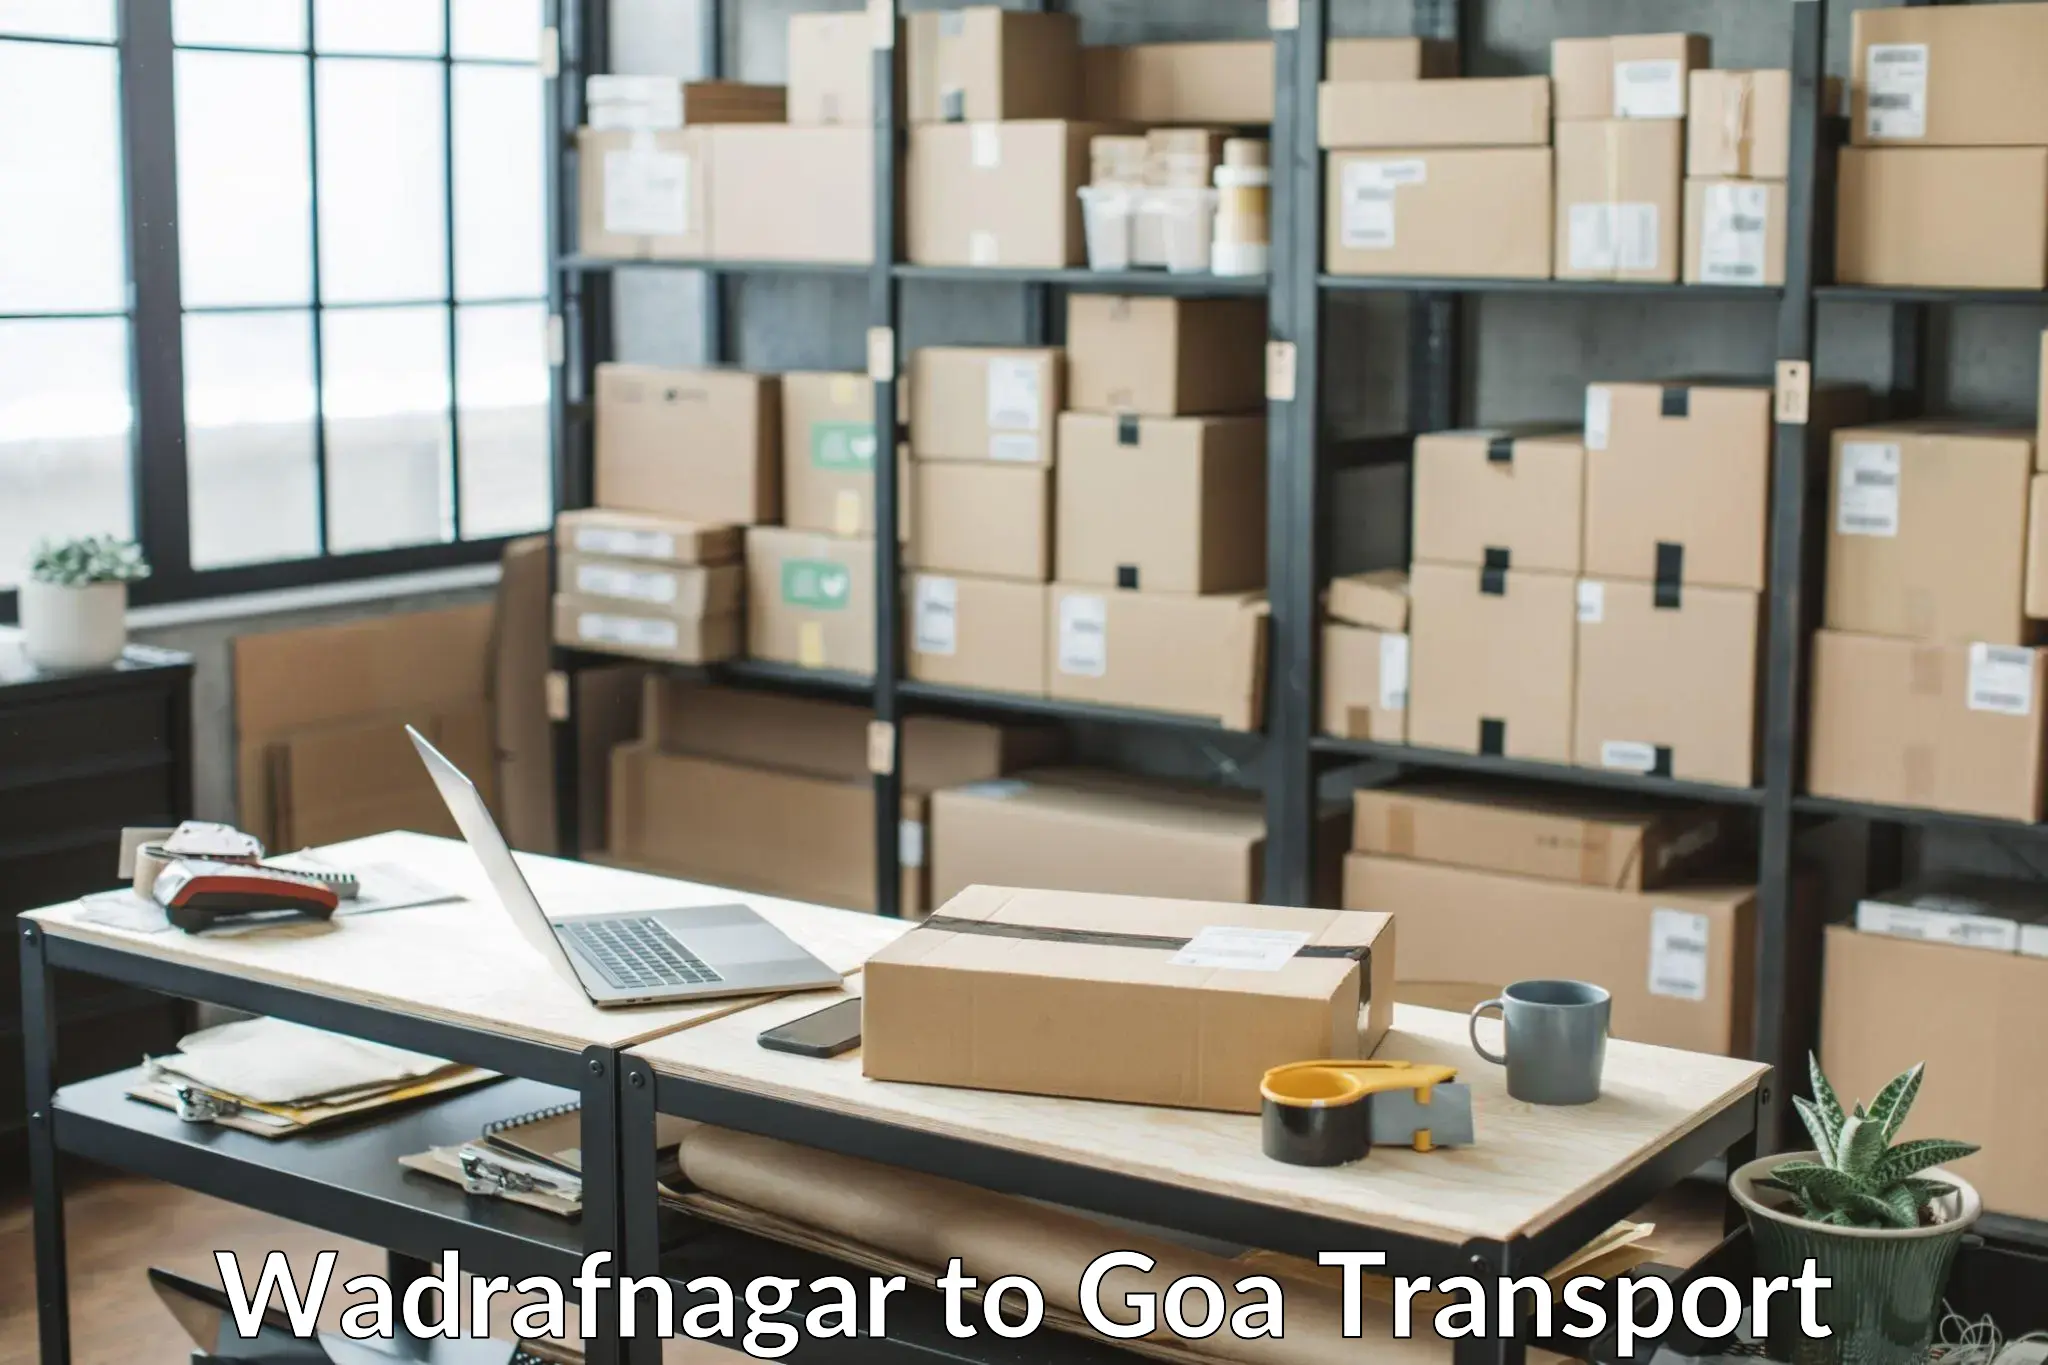 Pick up transport service Wadrafnagar to NIT Goa